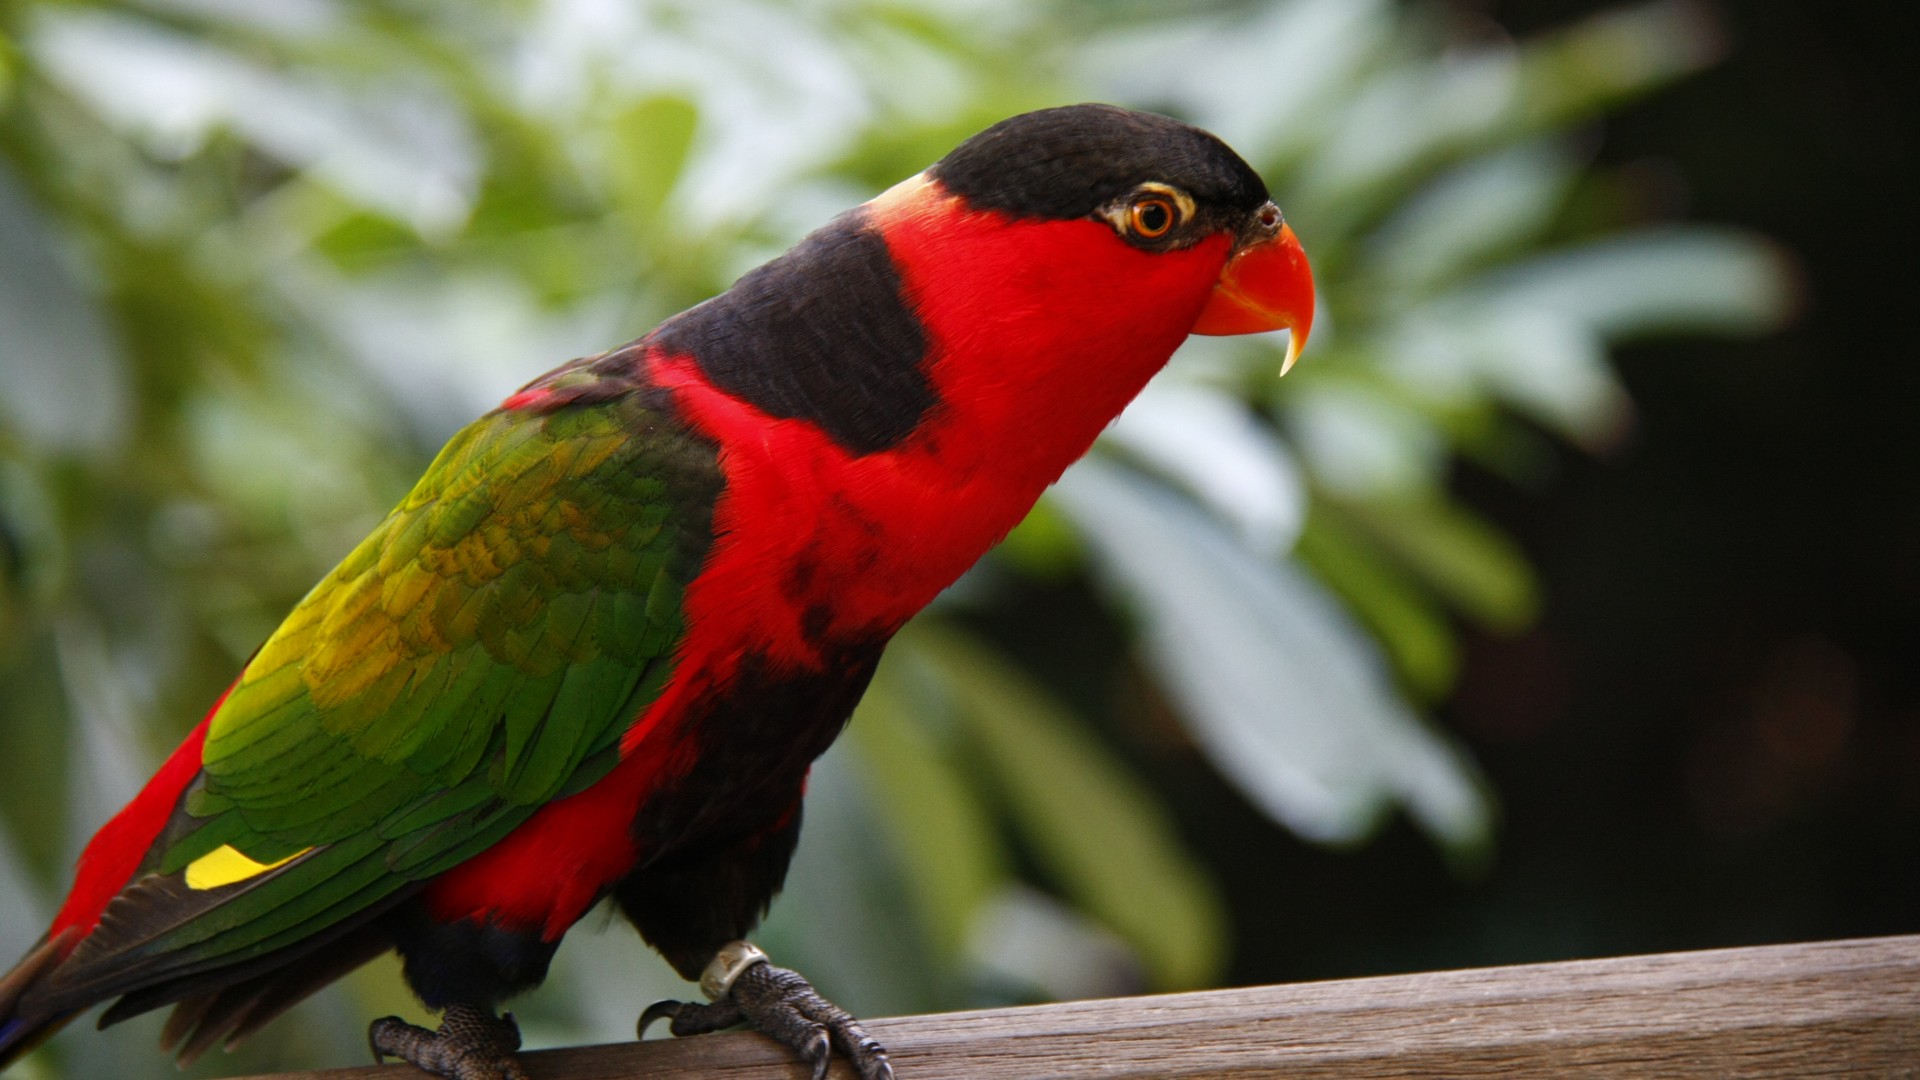 попгуай, туризм, птица, животное, природа, красная, зеленая, Parrot, Jurong Bird Park, tourism, bird, animal, nature, red, green (horizontal)